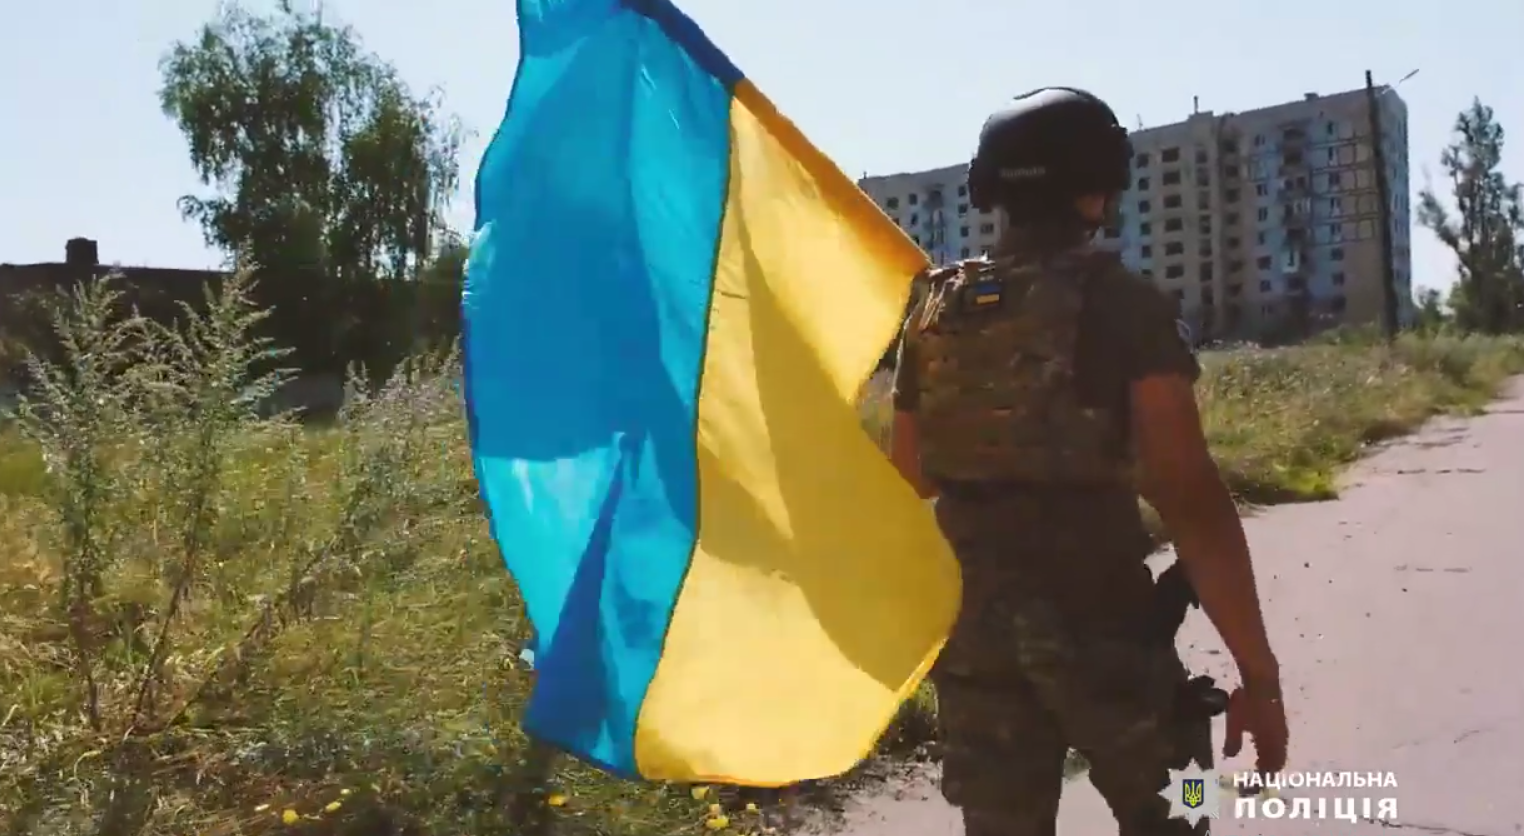 Авдеевка – это Украина! Защитники установили украинский флаг на многоэтажке возле "нуля"